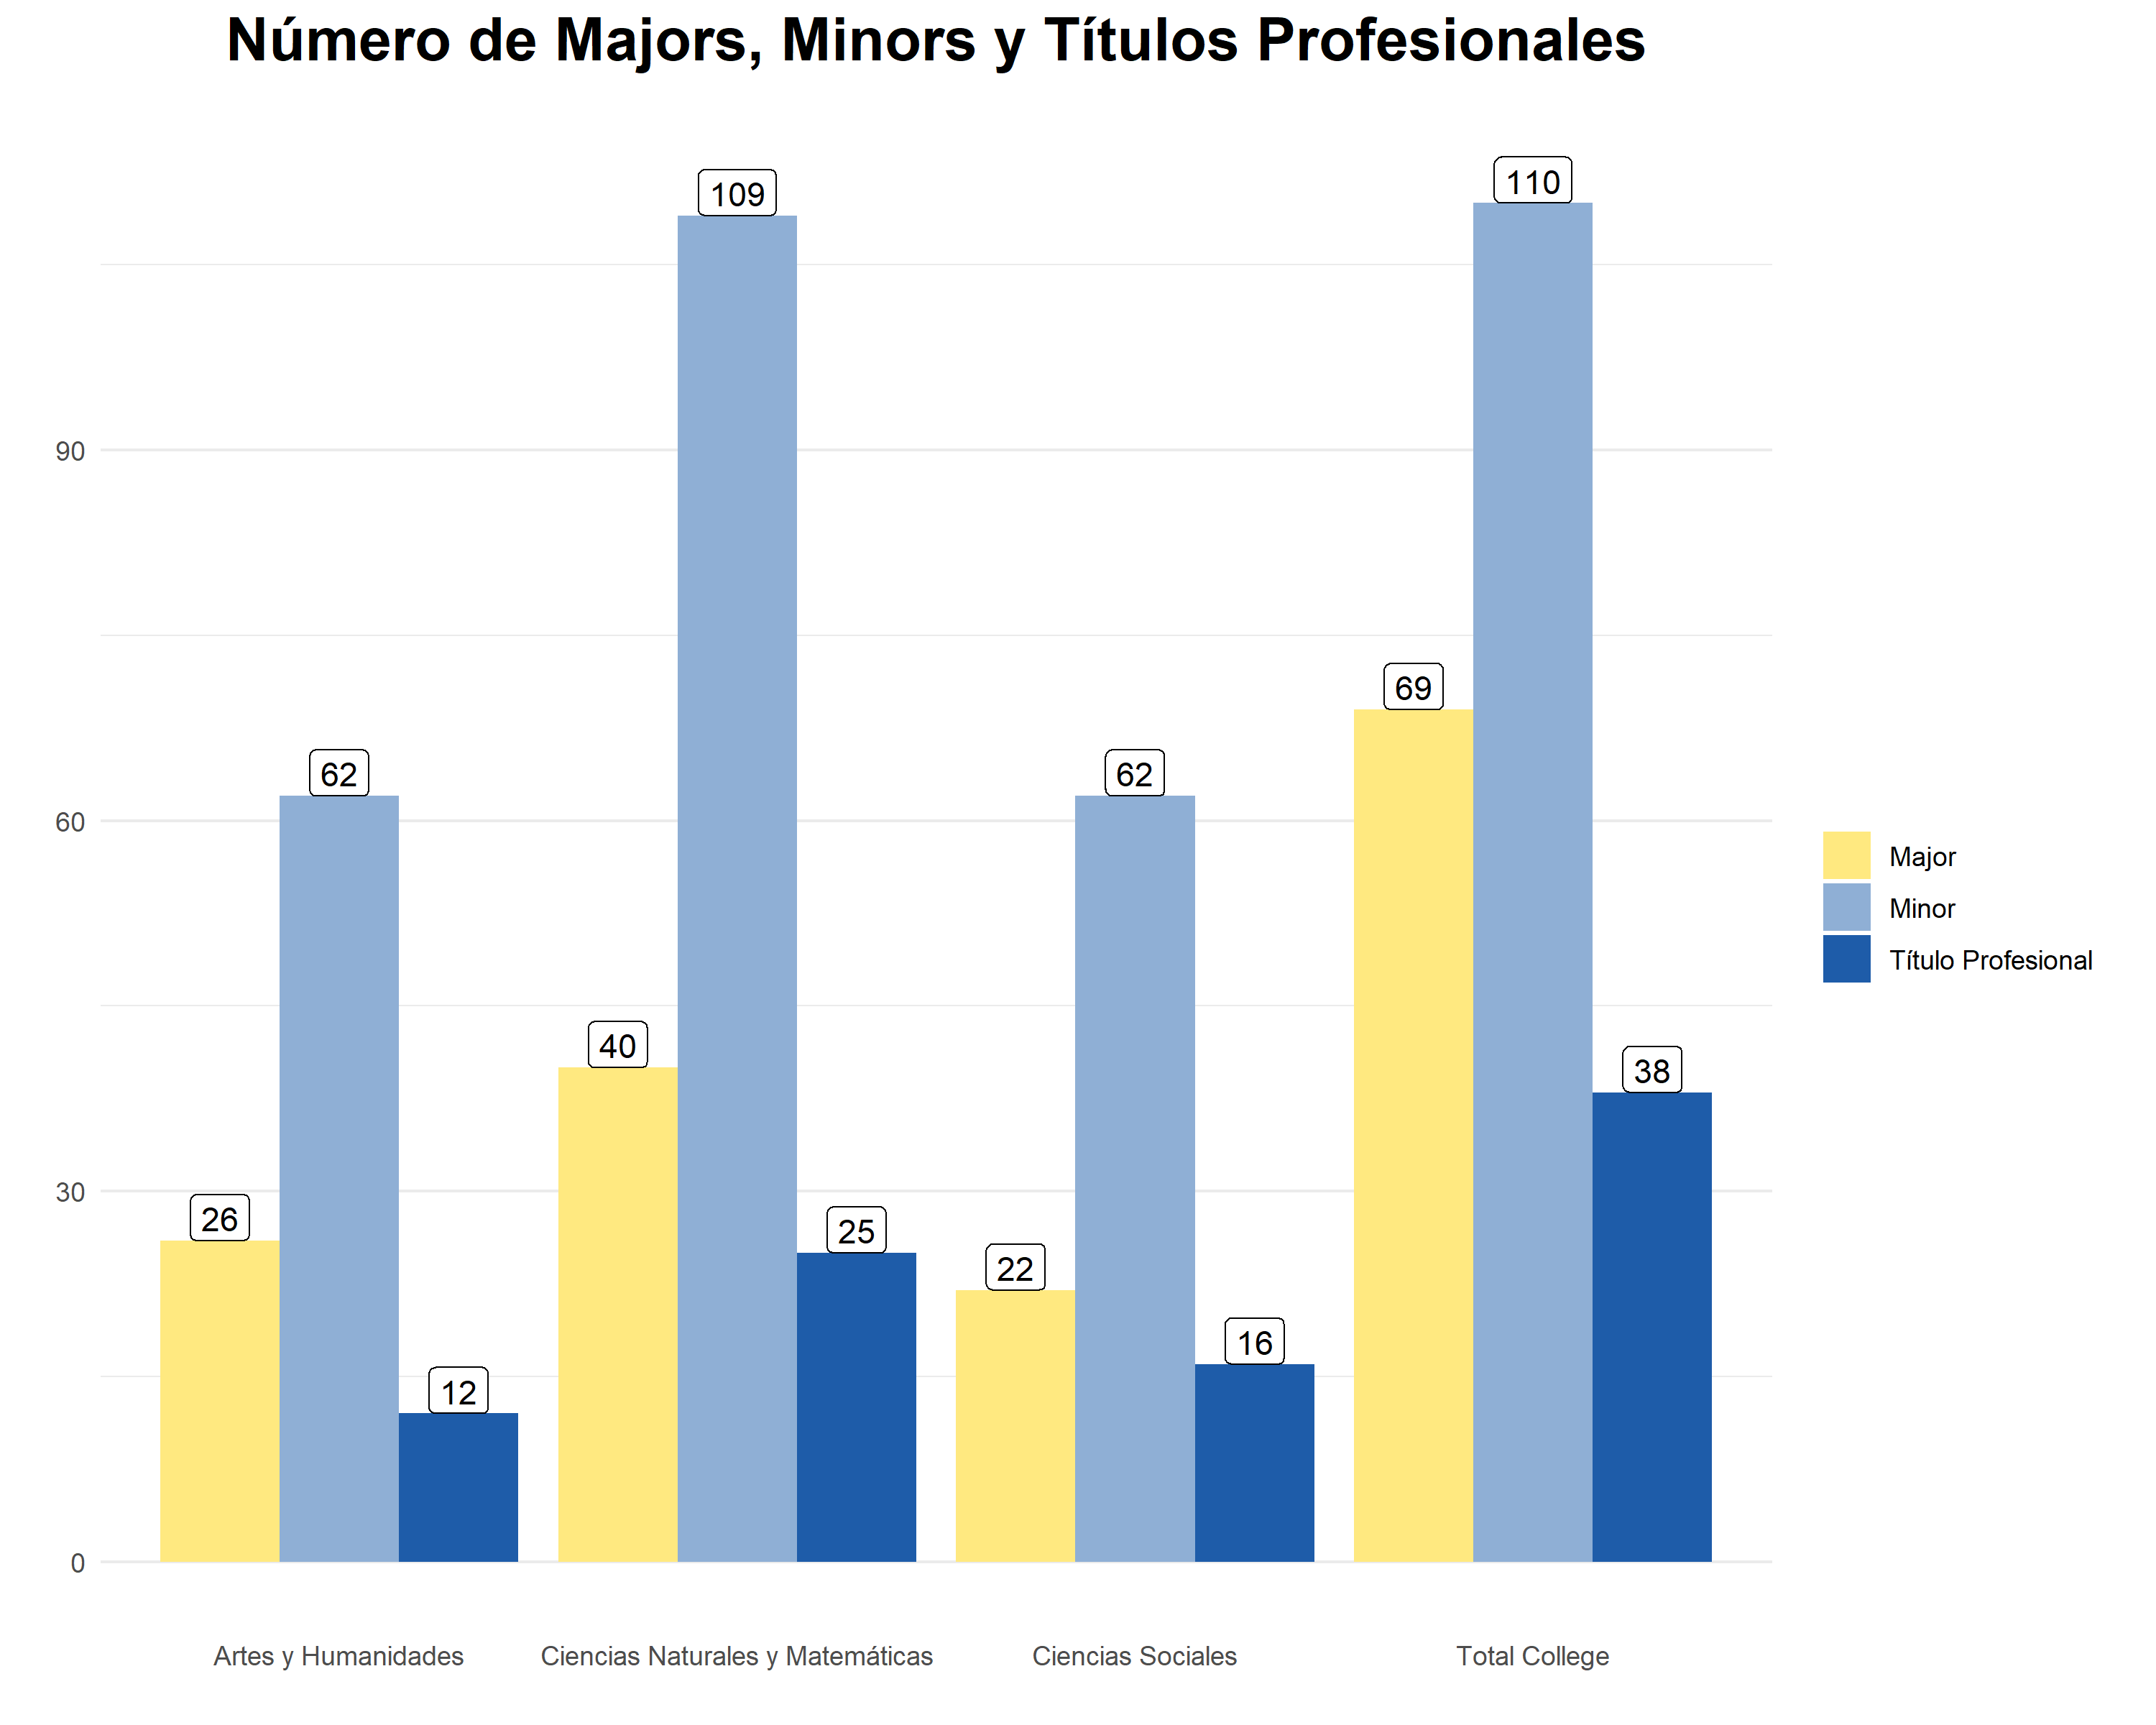 Numero de Majors Minors y Titulos Profesionales